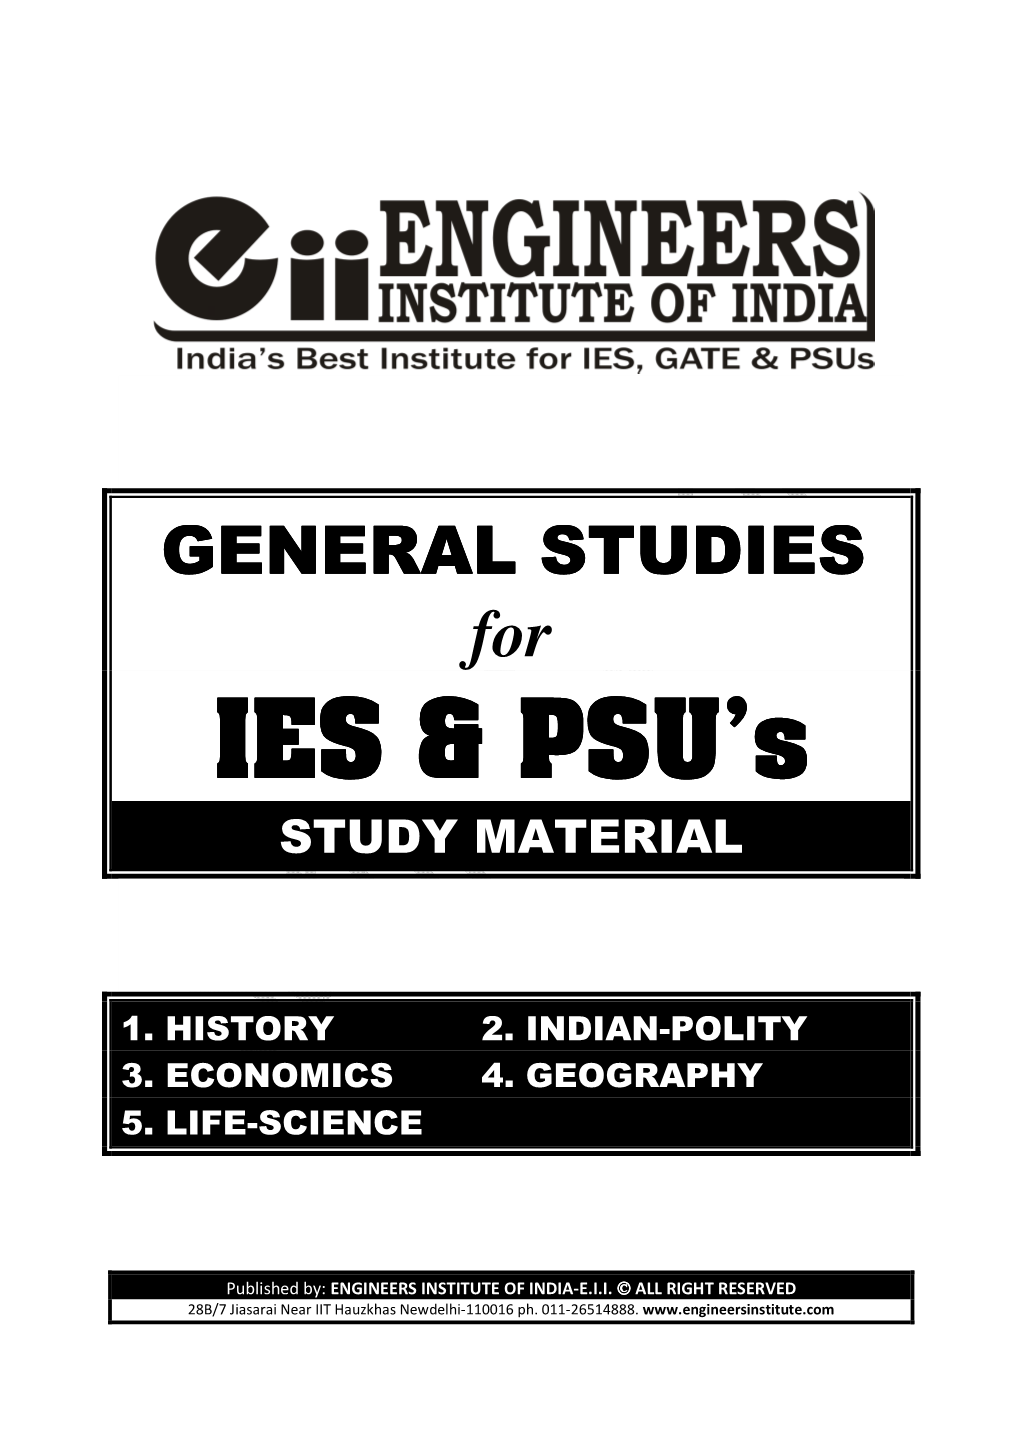 IES & PSU's IES & PSU's